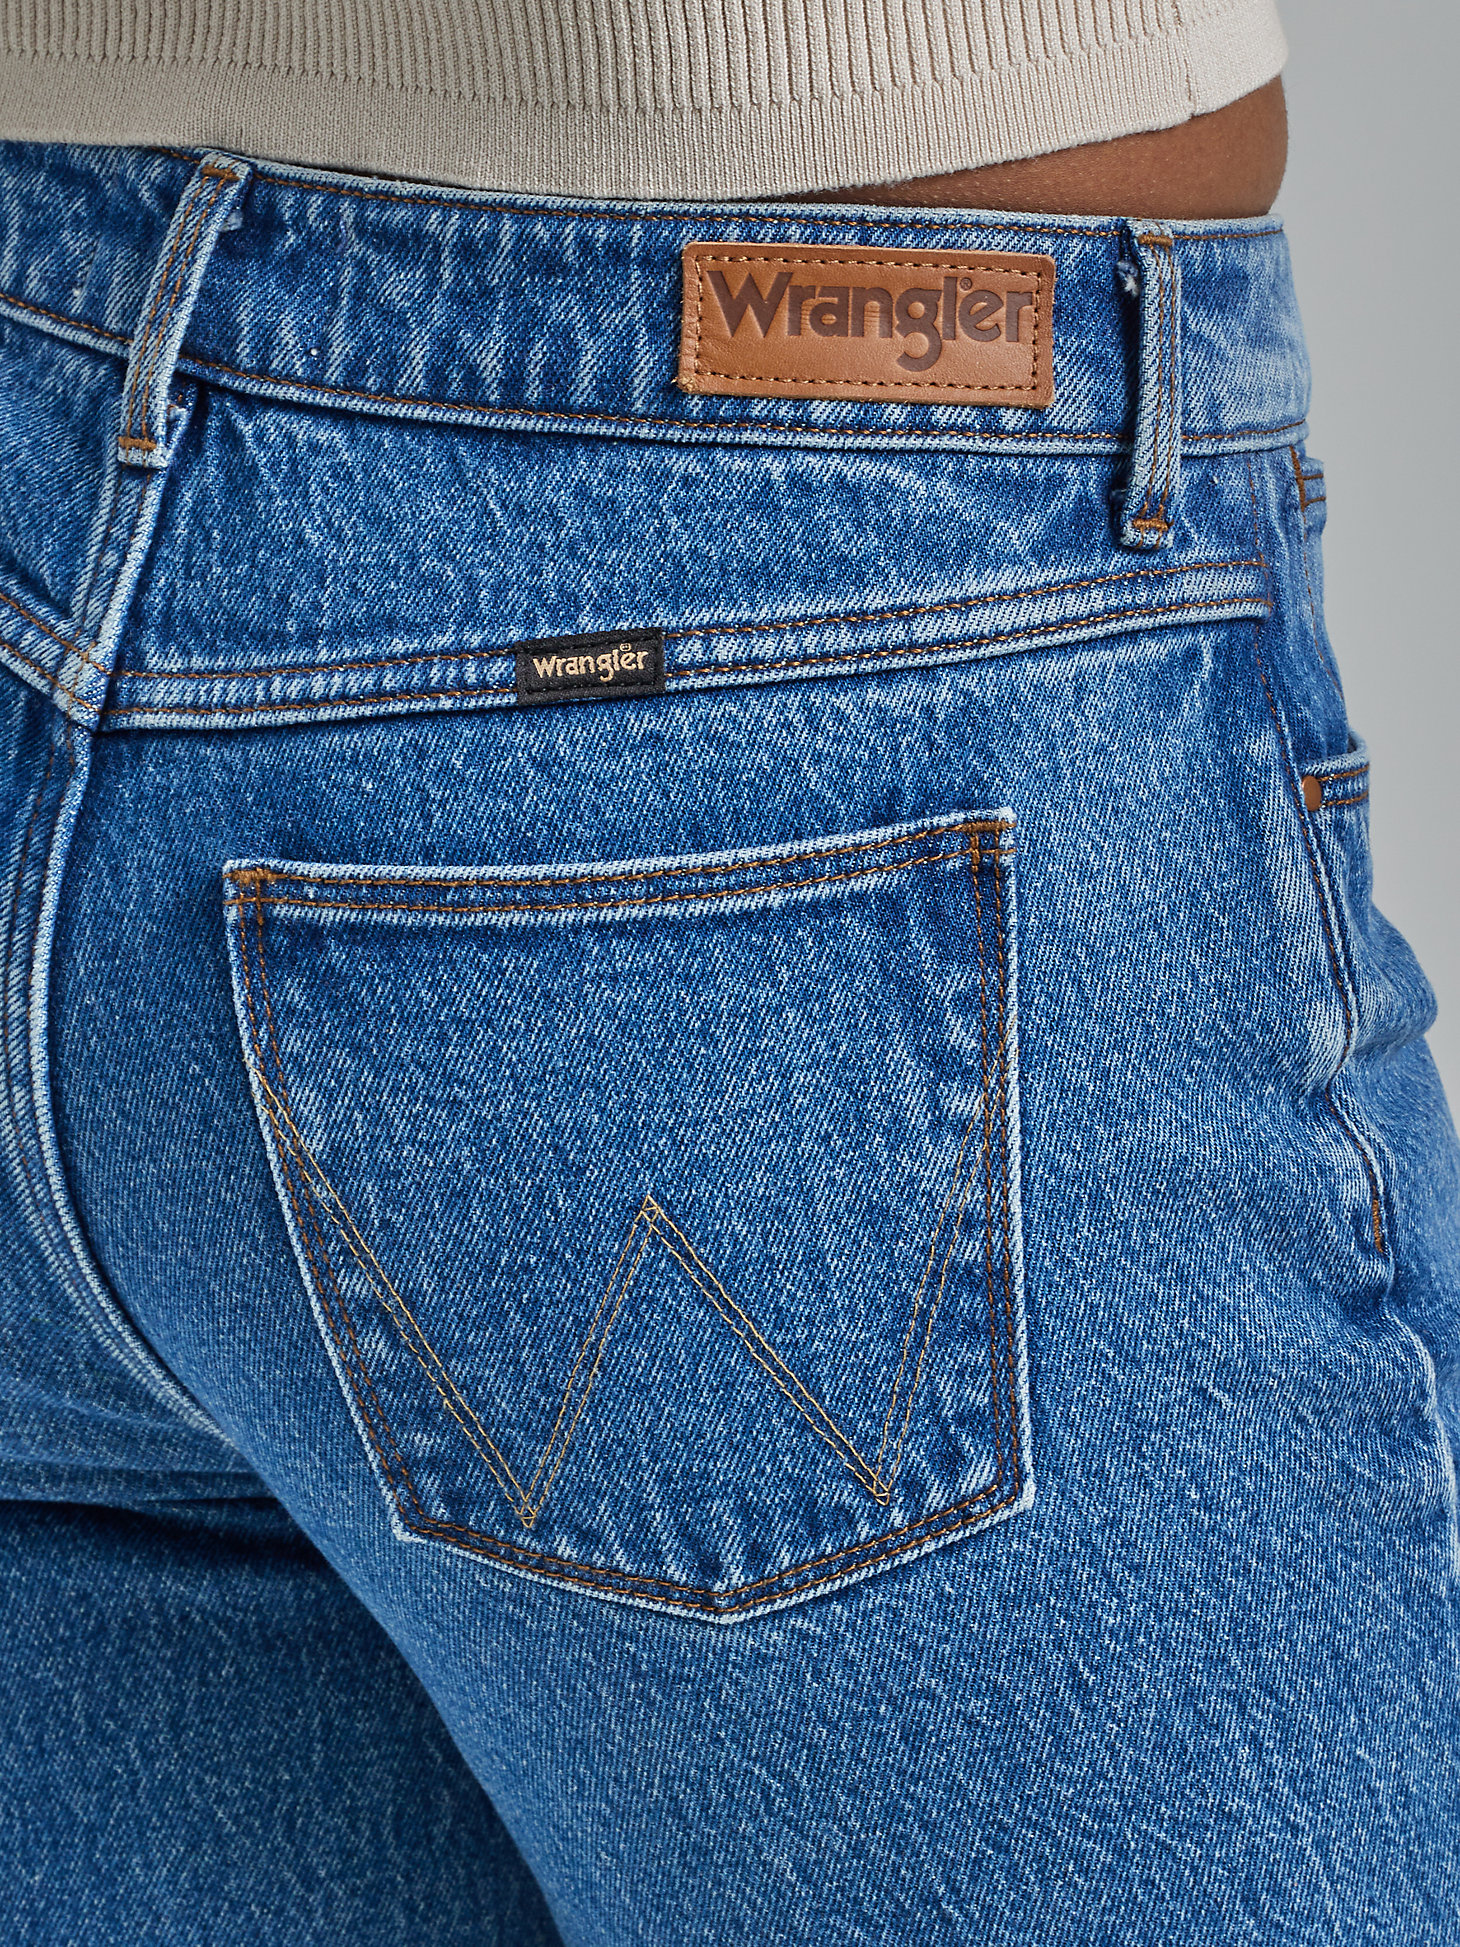 Women's Wrangler® Fierce Flare Jean in Meadow alternative view 7